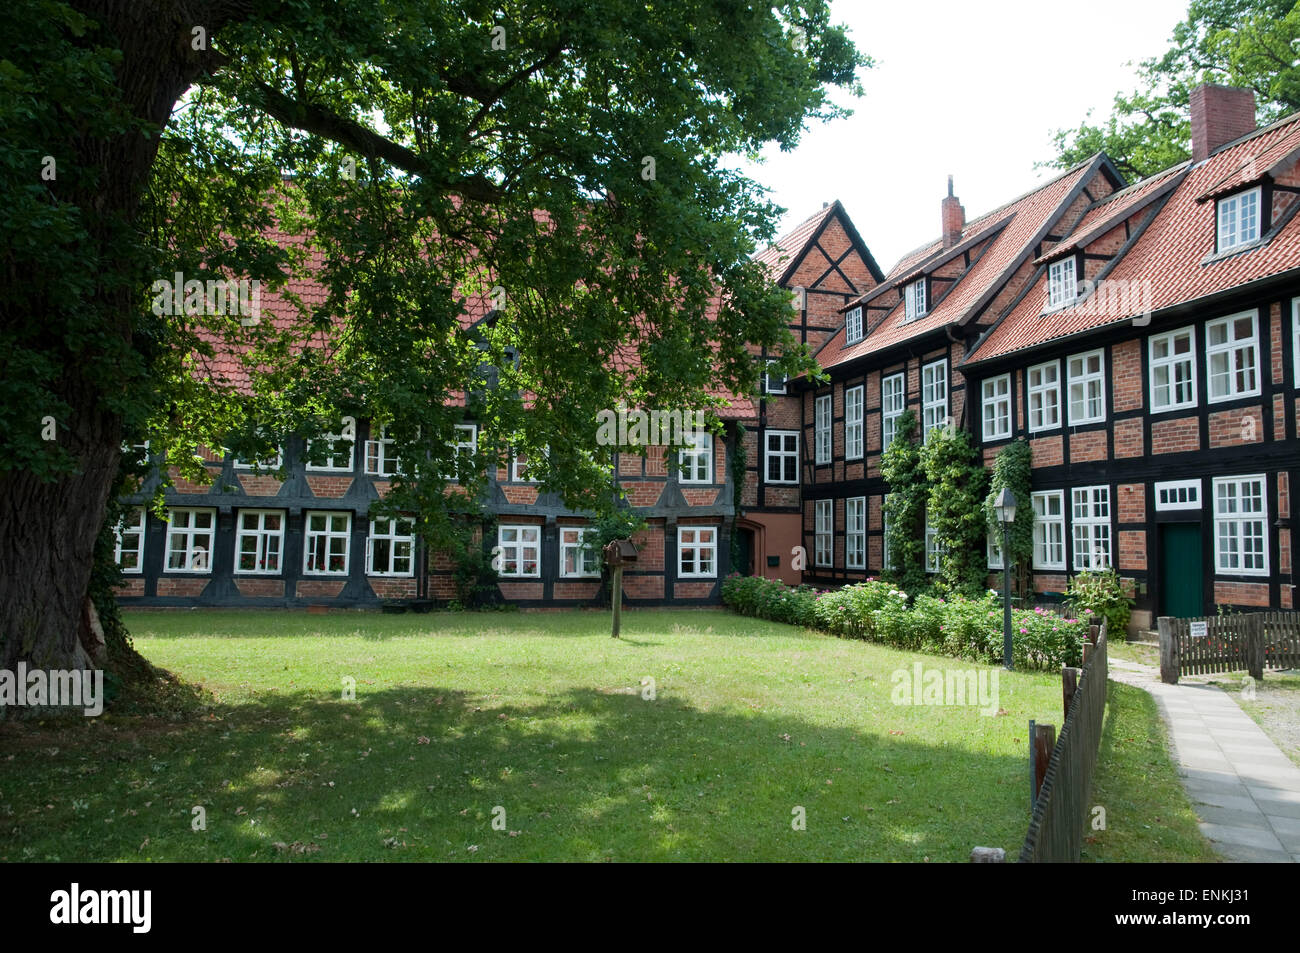 Fachwerkhaus, Kloster Wienhausen, Niedersachsen, Deutschland |  timber framed house, Abbey Wienhausen, Lower Saxony, Germany Stock Photo